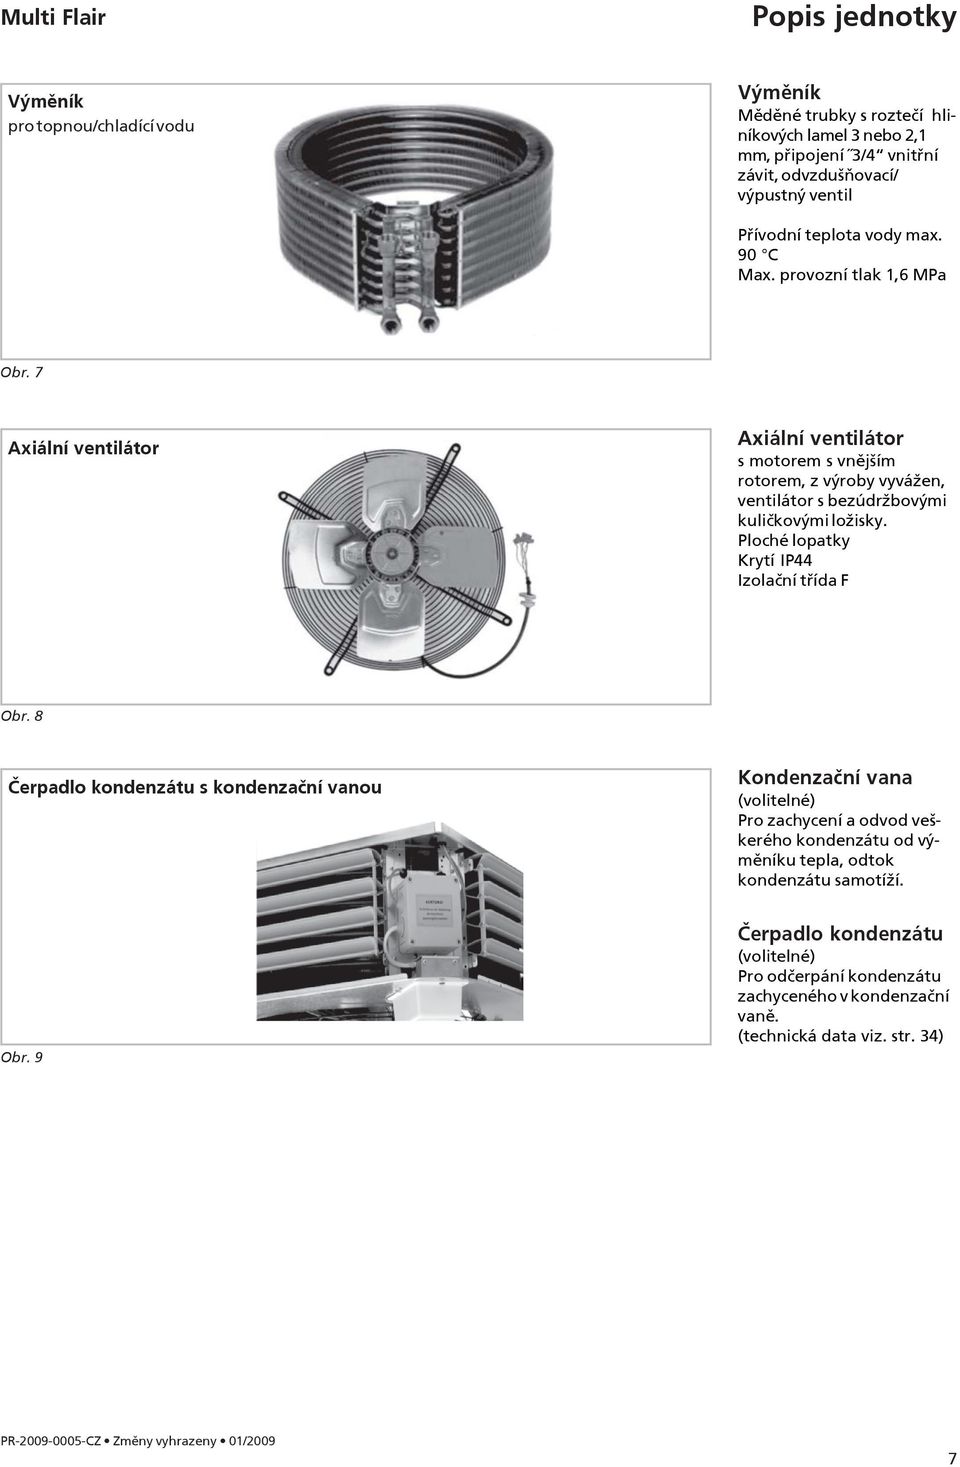 7 Axiální ventilátor Axiální ventilátor s motorem s vnějším rotorem, z výroby vyvážen, ventilátor s bezúdržbovými kuličkovými ložisky. Ploché lopatky Krytí IP44 Izolační třída F Obr.